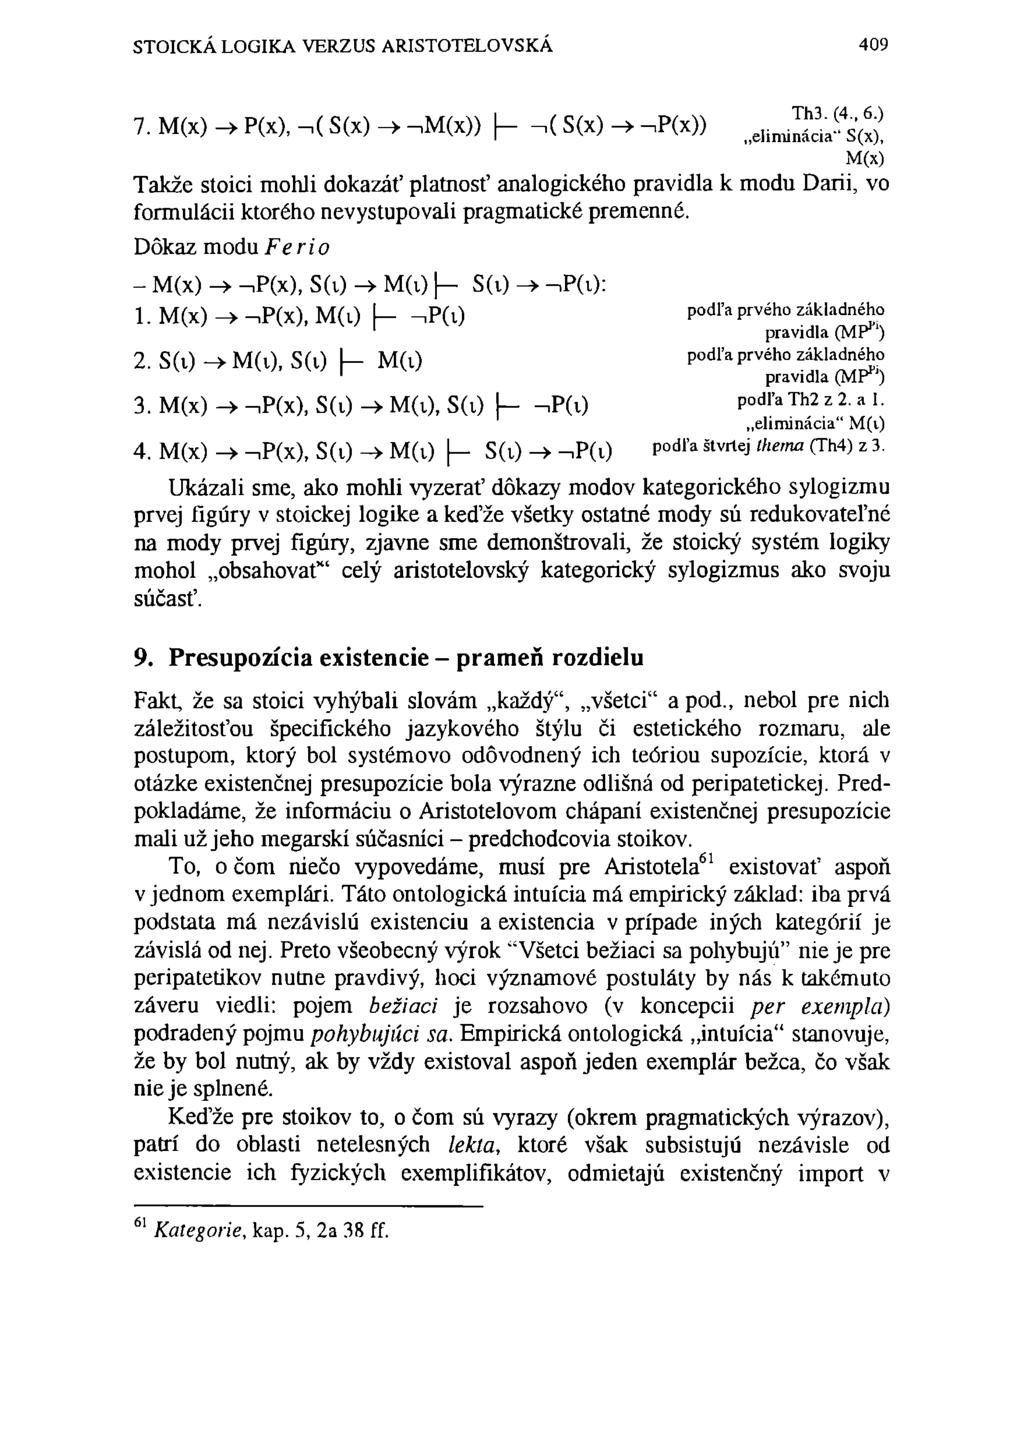 STOICKÁ LOGIKA VERZUS ARISTOTELOVSKÁ 409 7. M(x) -> P(X), -.( S(x) -> -im(x)),( S(x) -» -ip(x)) elimjácia^s'w!